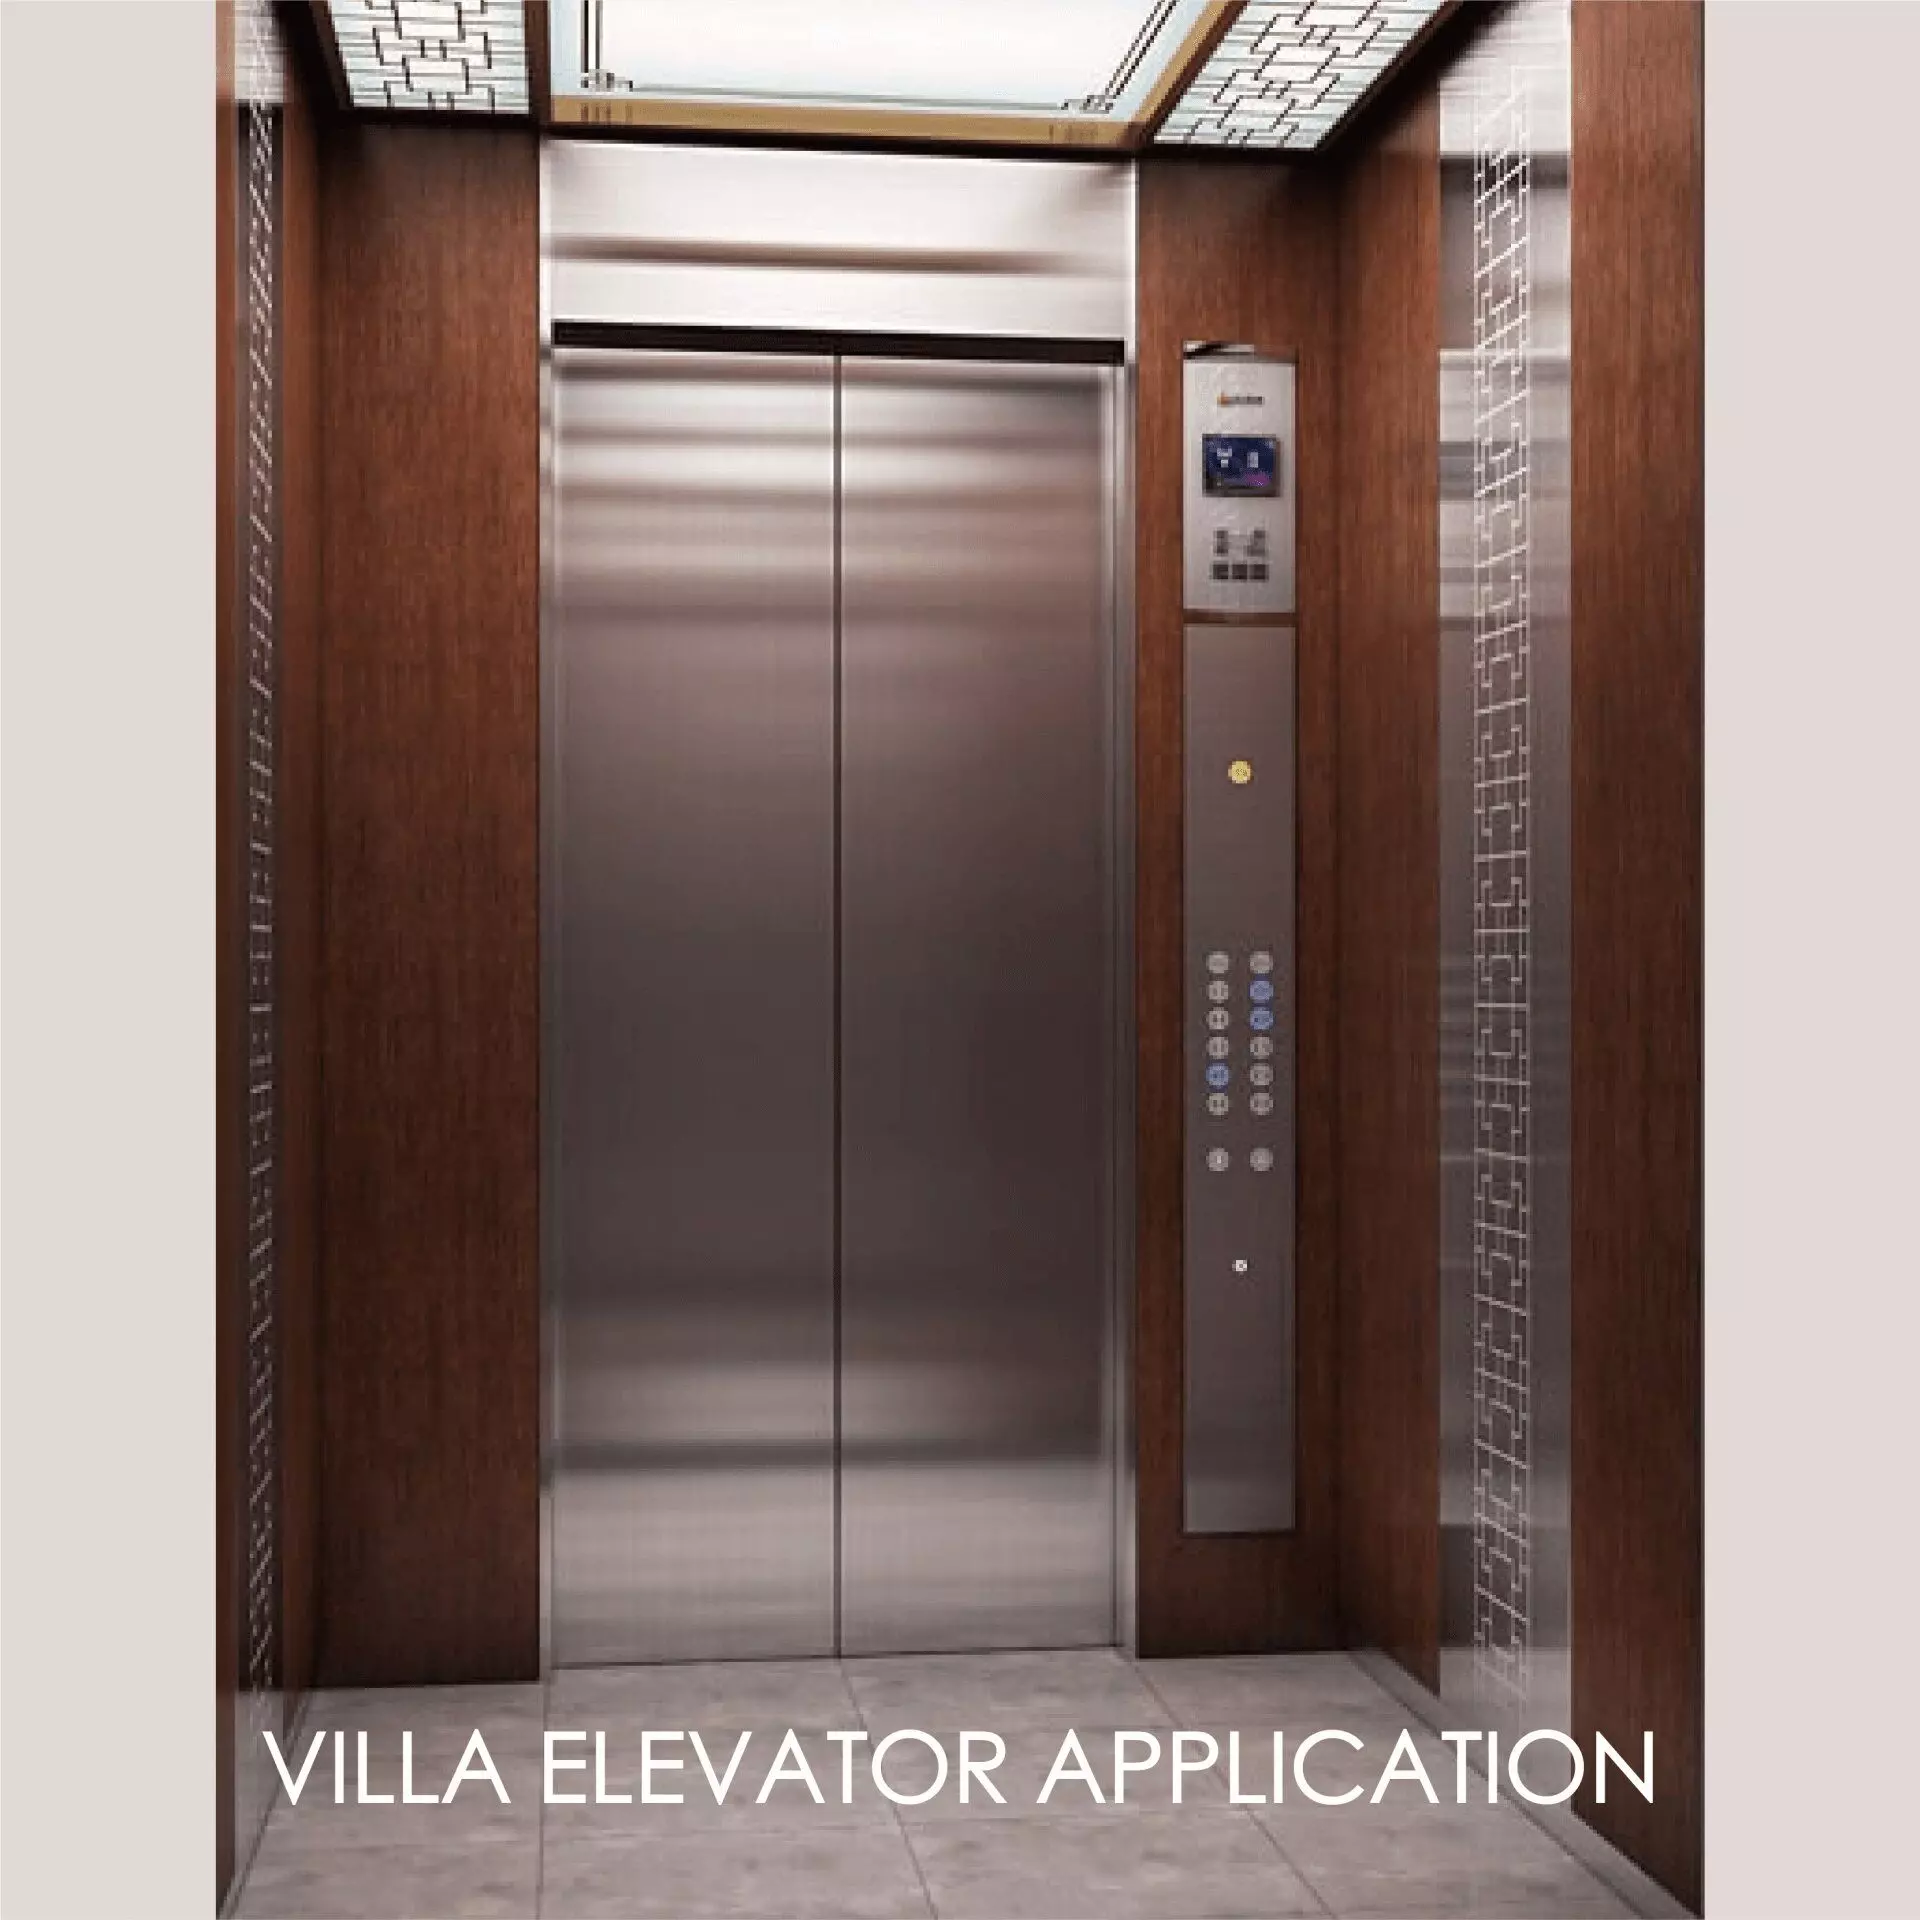 Usar metal laminado para decorar o painel da porta do elevador e o espaço interior pode criar estética e durabilidade.